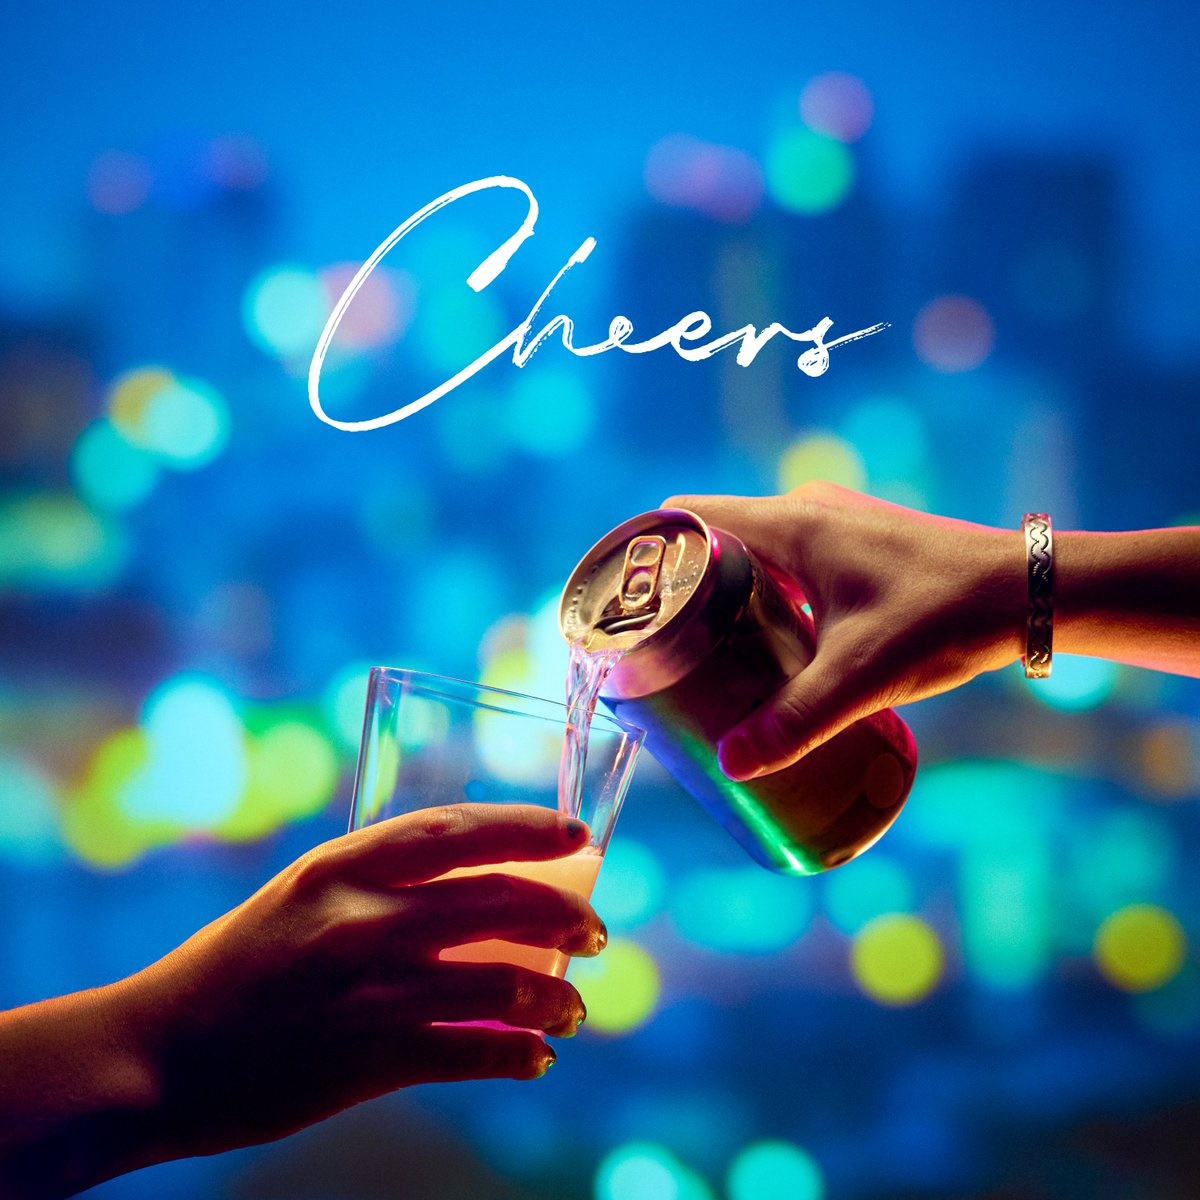 『Tani Yuuki - Cheers』収録の『Cheers』ジャケット